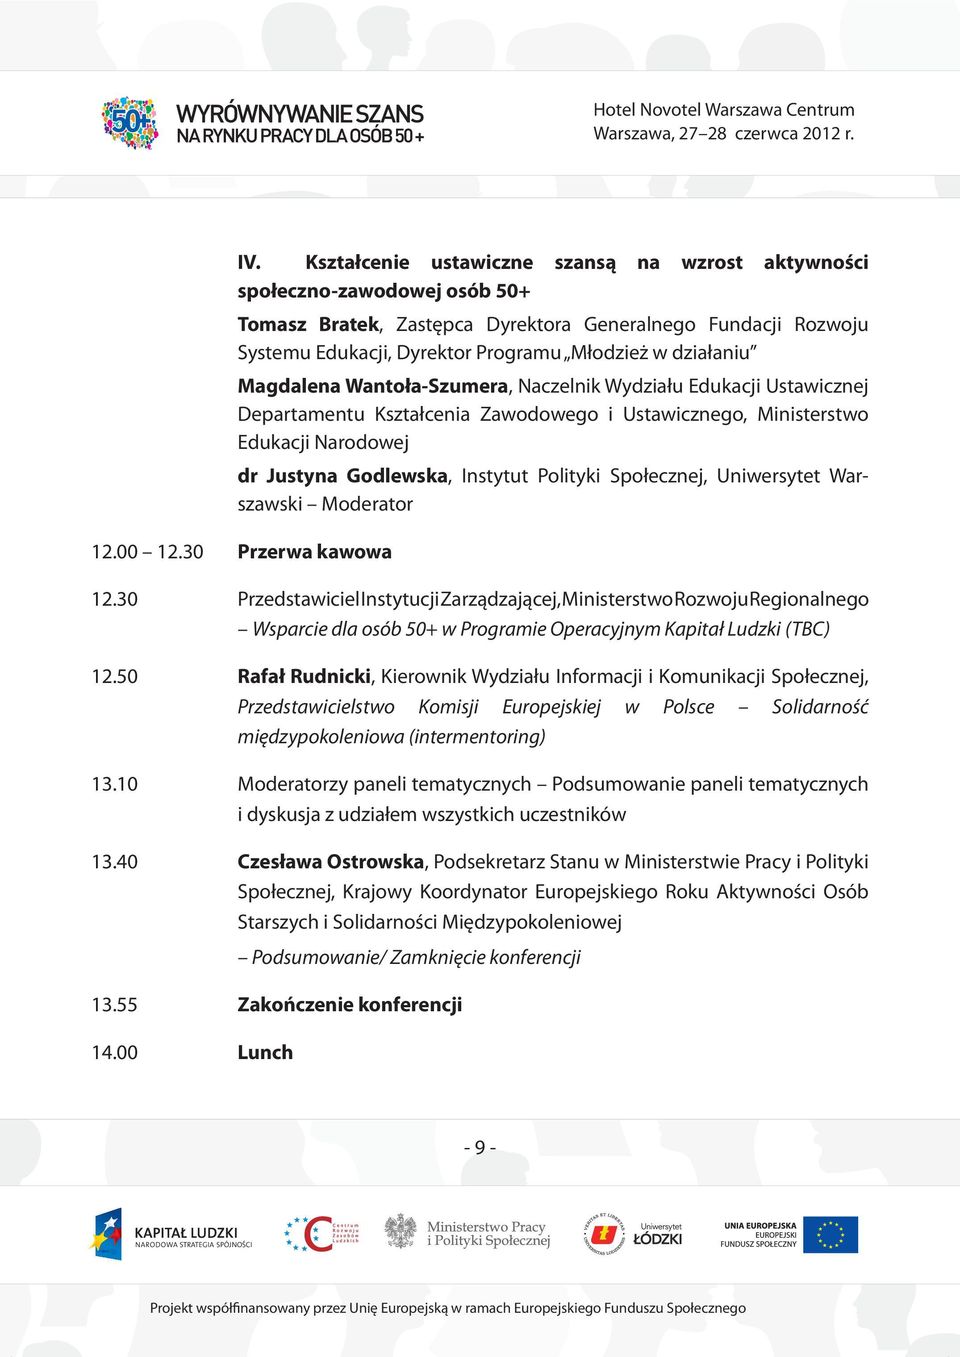 Polityki Społecznej, Uniwersytet Warszawski Moderator 12.00 12.30 Przerwa kawowa 12.